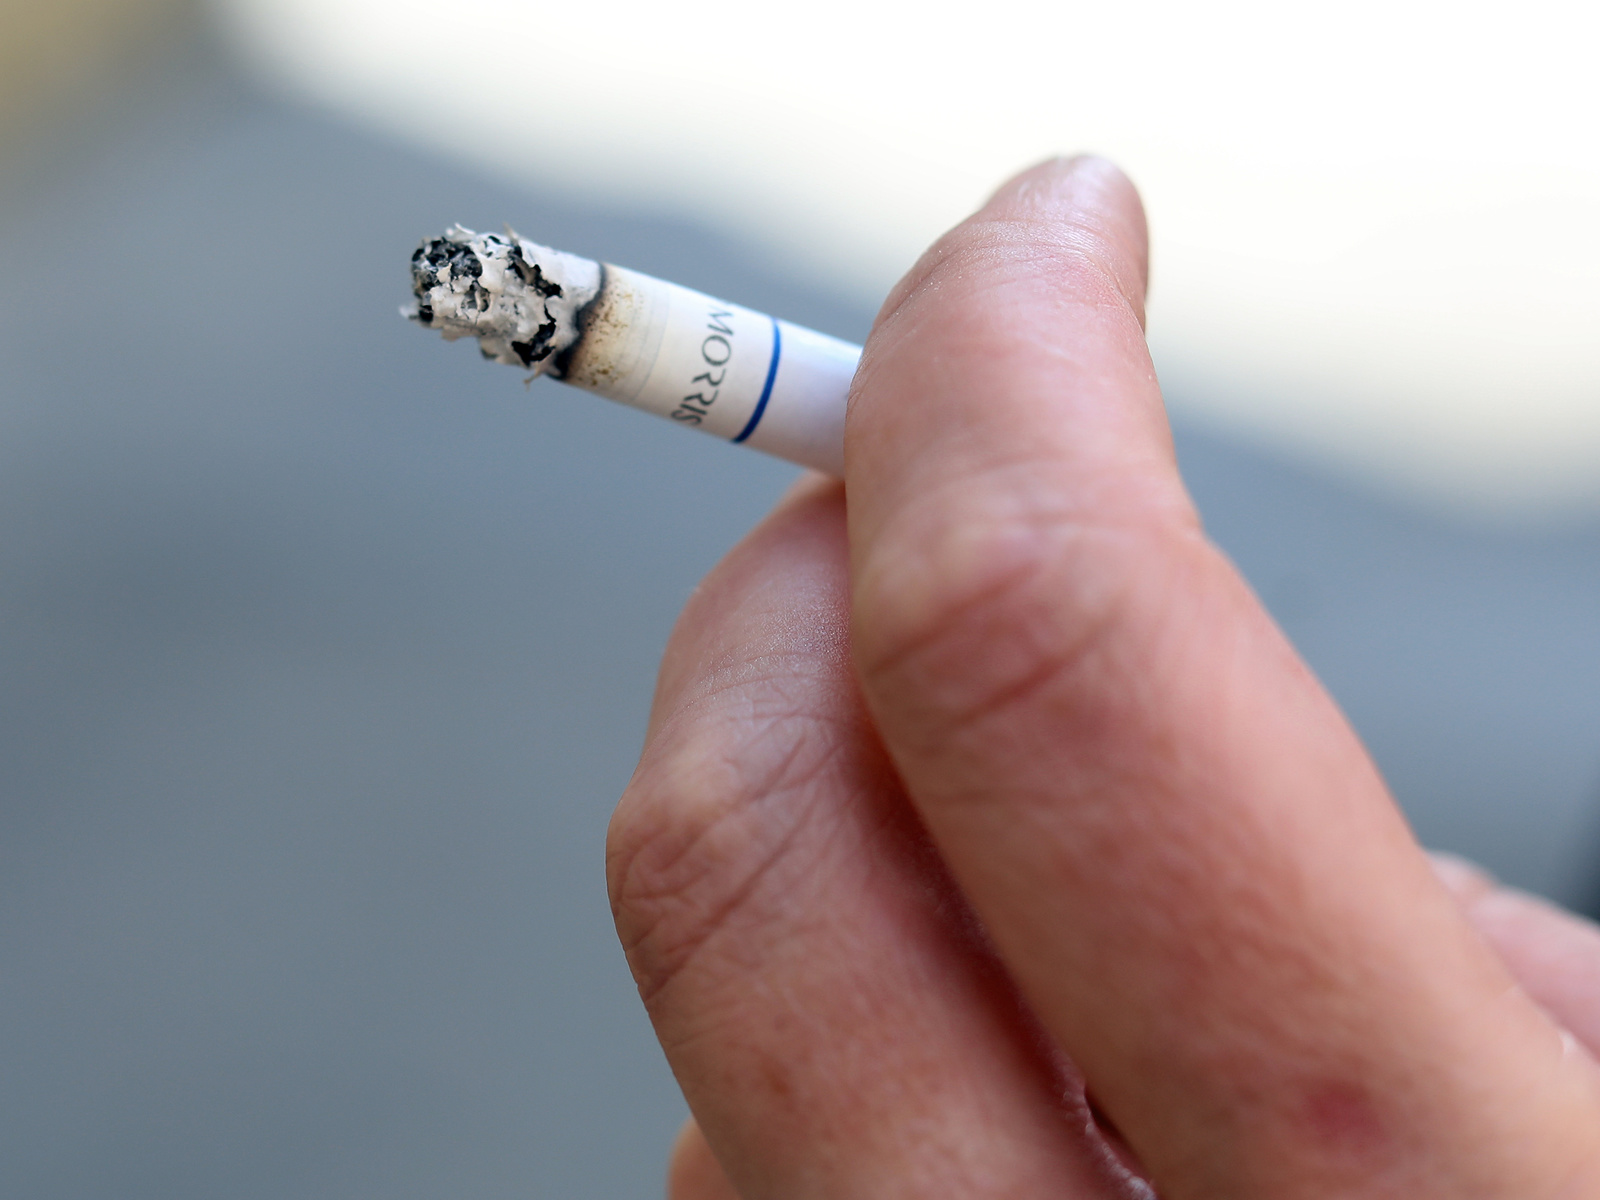 Kuřáků v Česku ubývá, i kvůli ceně. Přicházejí na chuť baleným cigaretám -  Brněnský deník